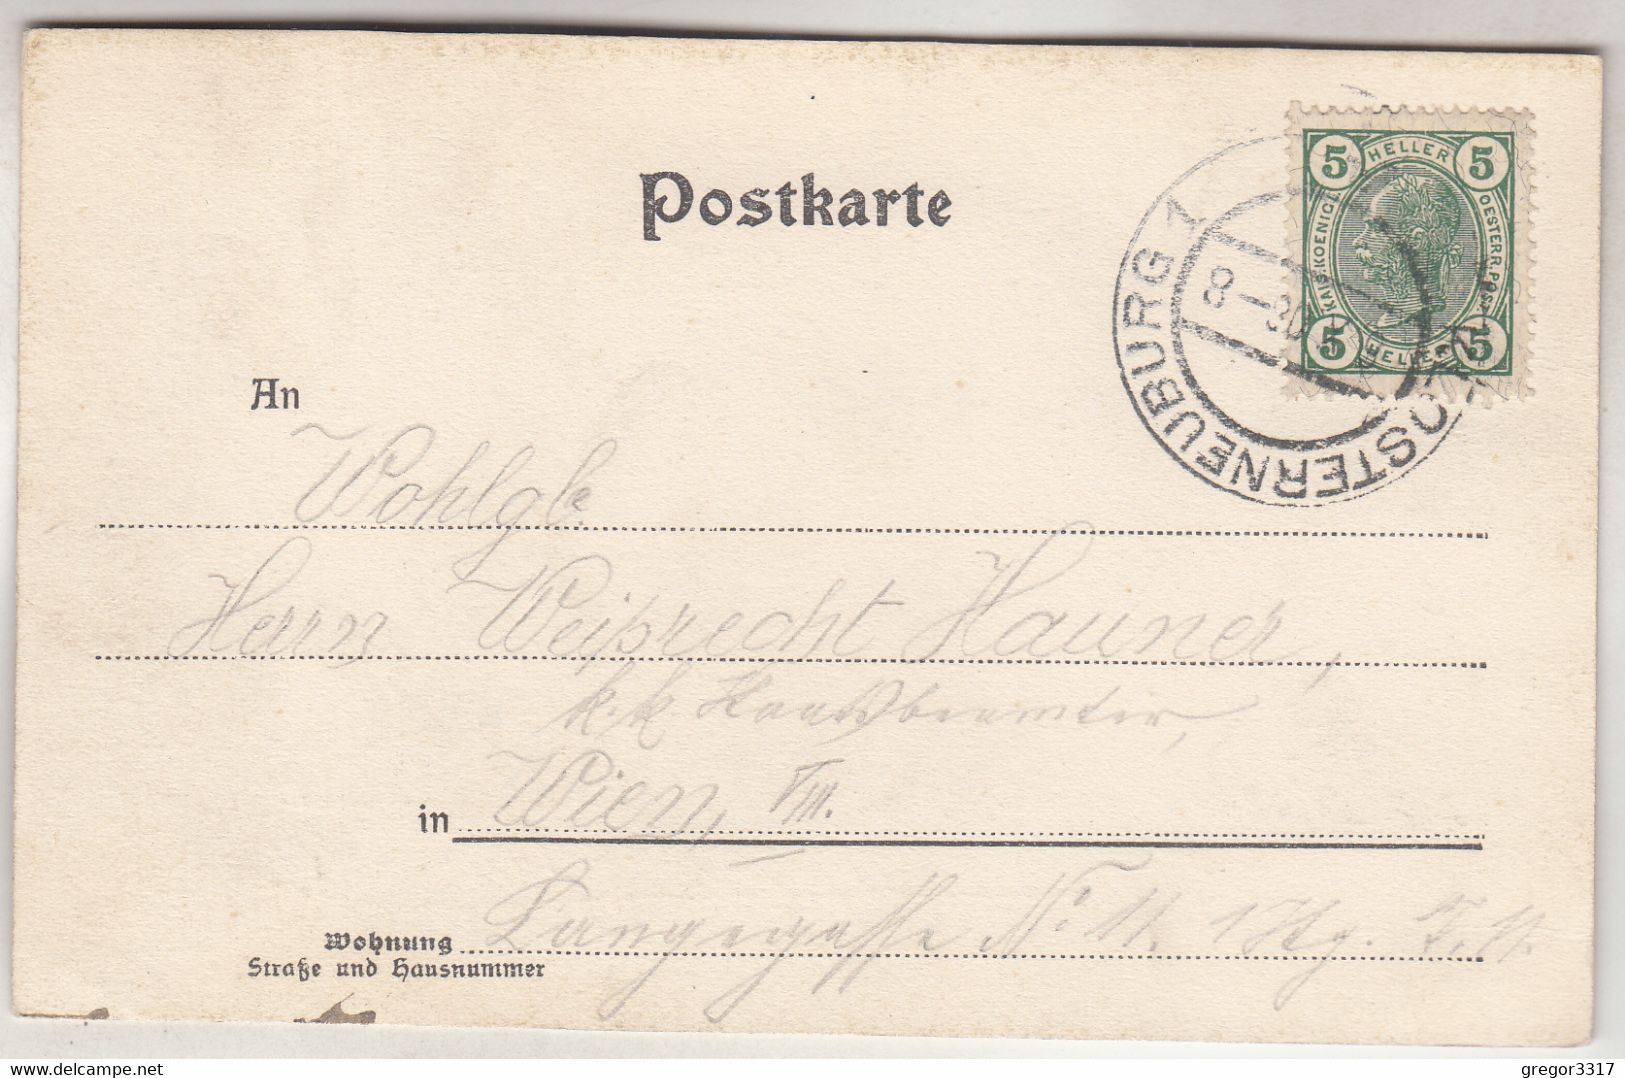 C5849) KLOSTERNEUBURG - P.P. Augustiner Chorherren Stift U. Kirche ALT 1906 - Klosterneuburg